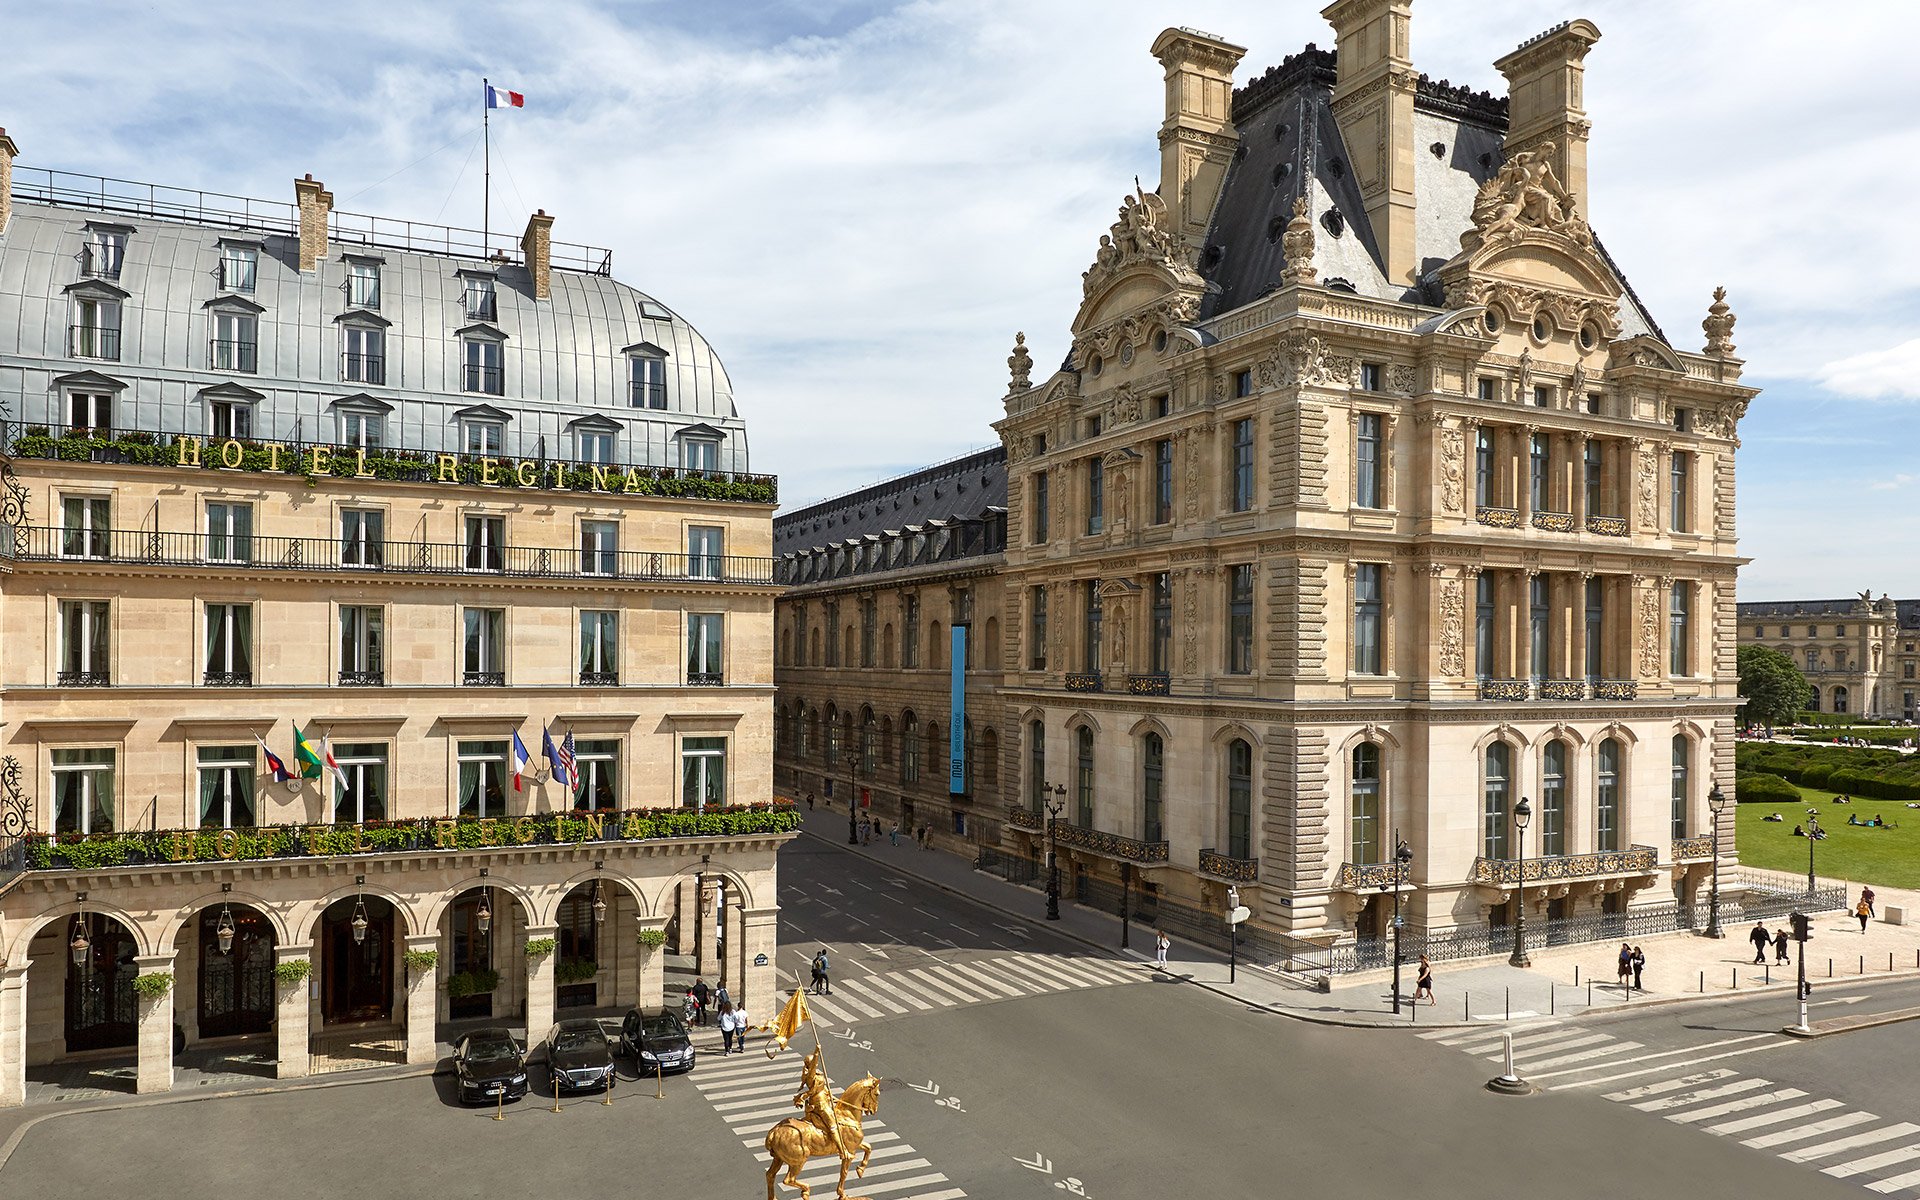 Hôtel Régina Louvre | Grand parisian hotel